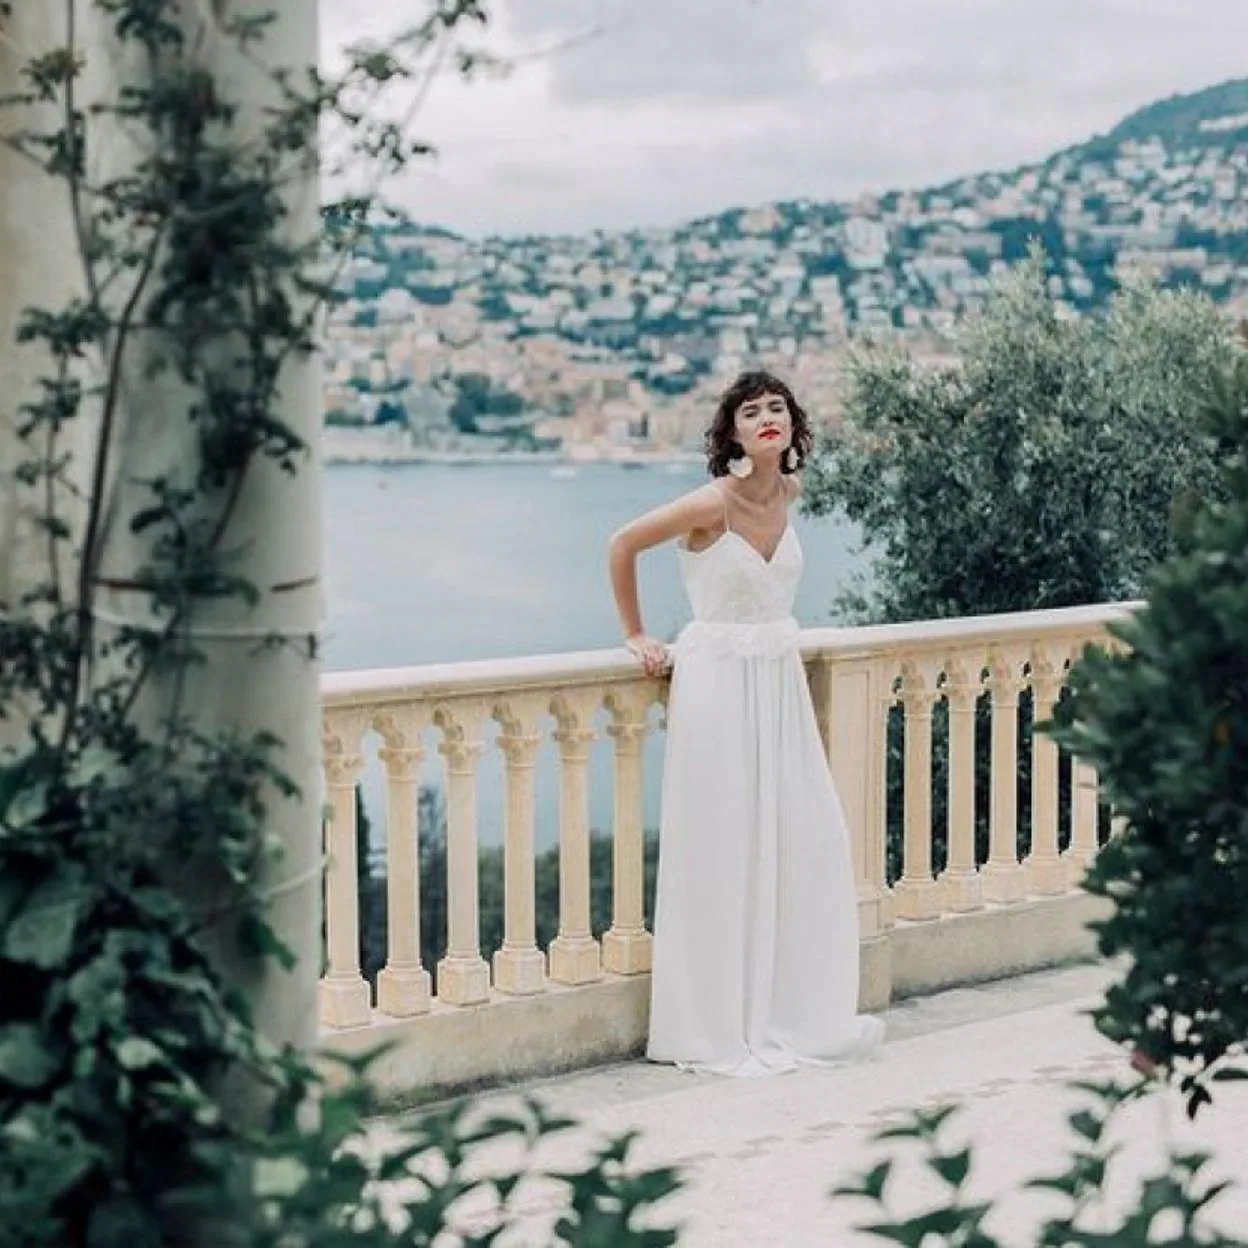 Zara tiene el vestido de novia low cost perfecto para una boda